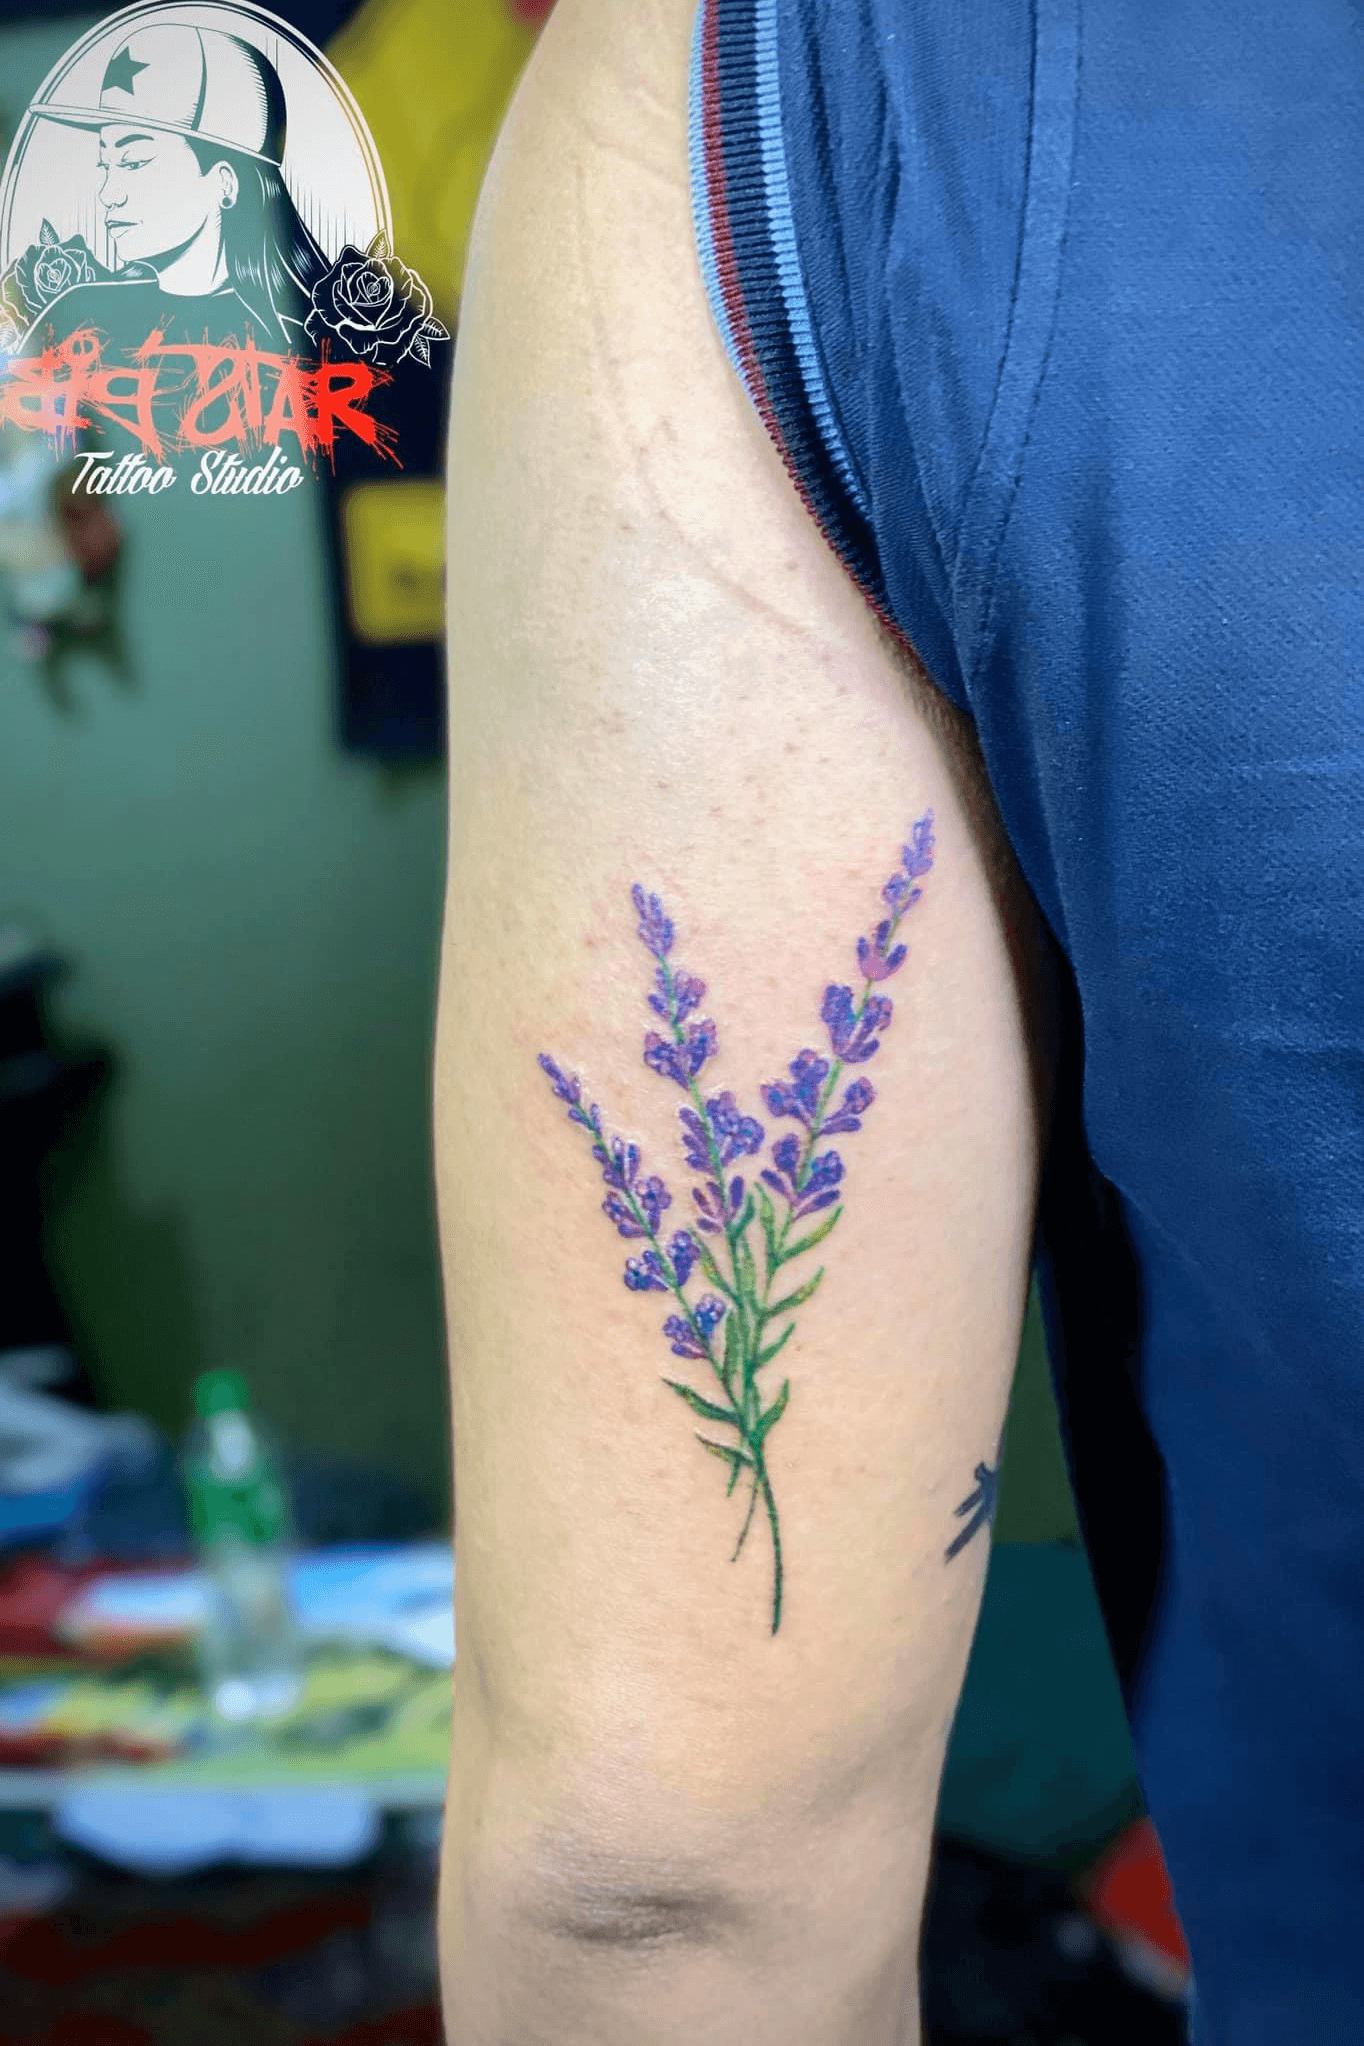 Eternal Devotion Tattoos  Beautiful lavender flowers by bennygon lavender  flower tattoo tattoos smalltattoos cutetattoos girlswithtattoos  tattooing lavendertattoo inkedgirls tattooed eternaldevotiontattoos  orlando orlandofl orlandocity 